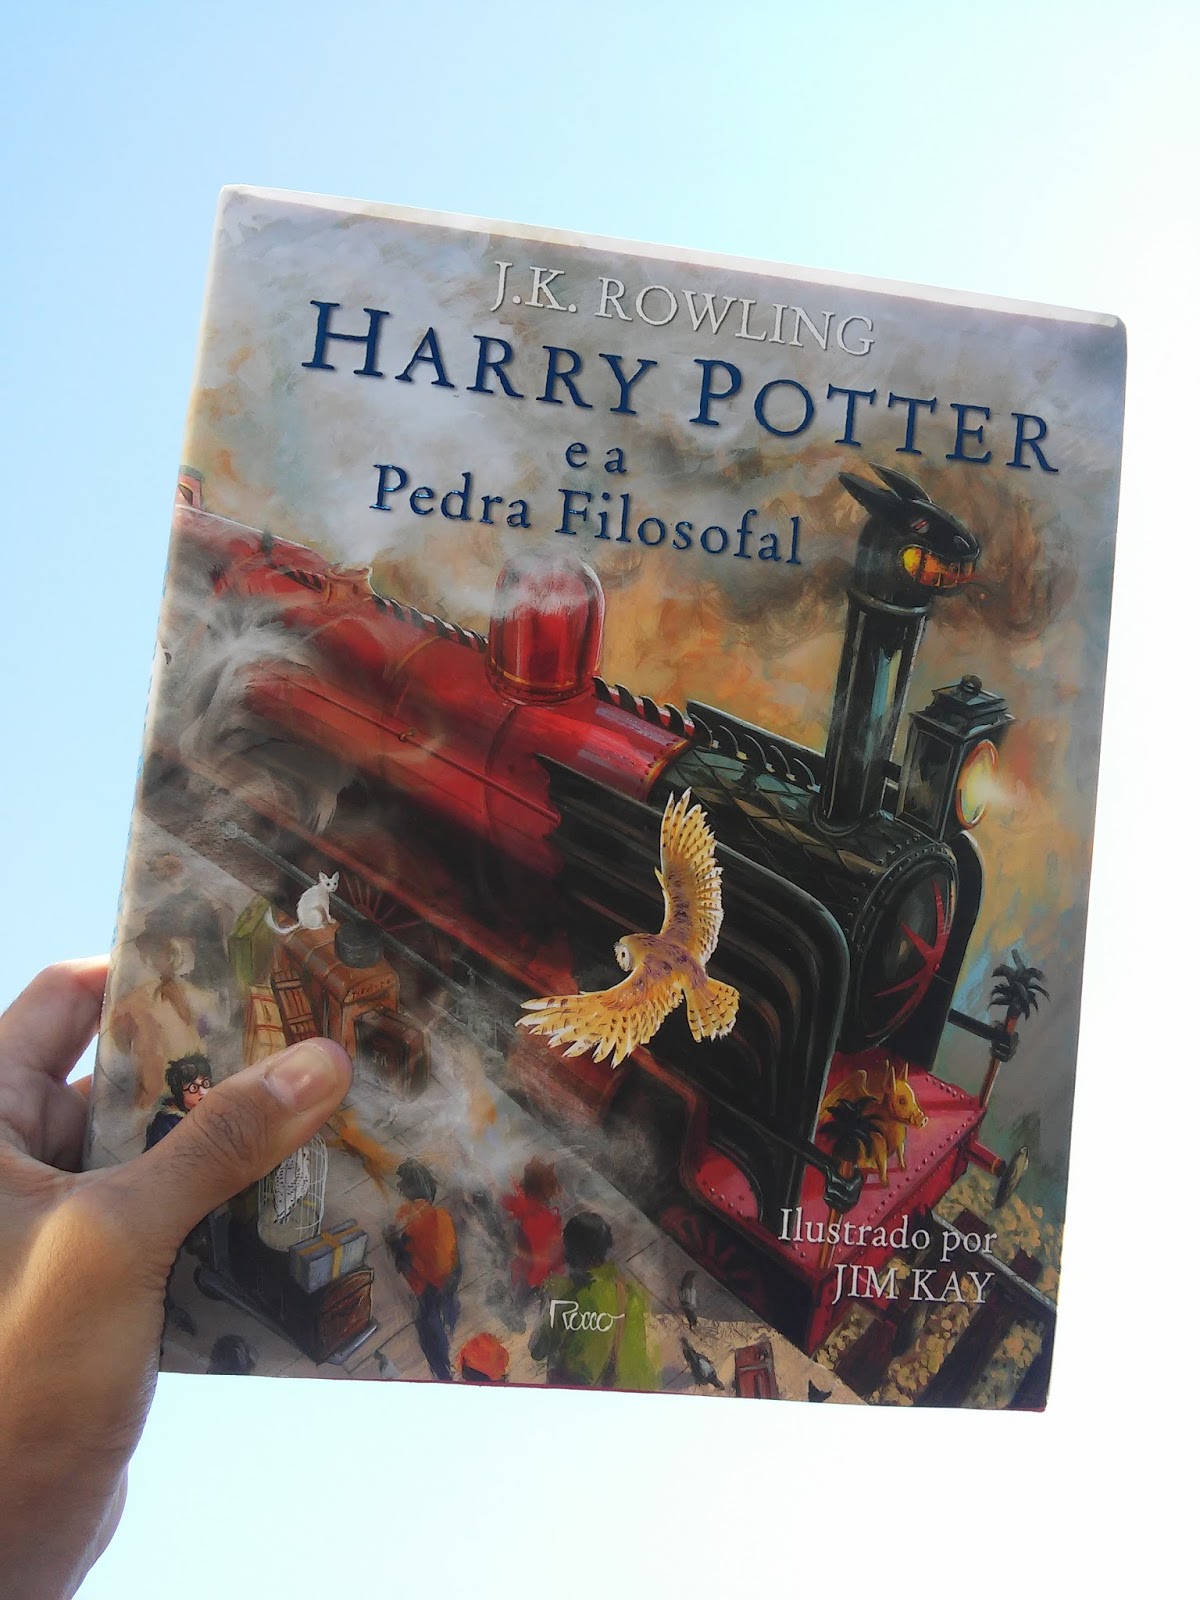 Série inspirada nos livros de Harry Potter é confirmada, TV e Séries